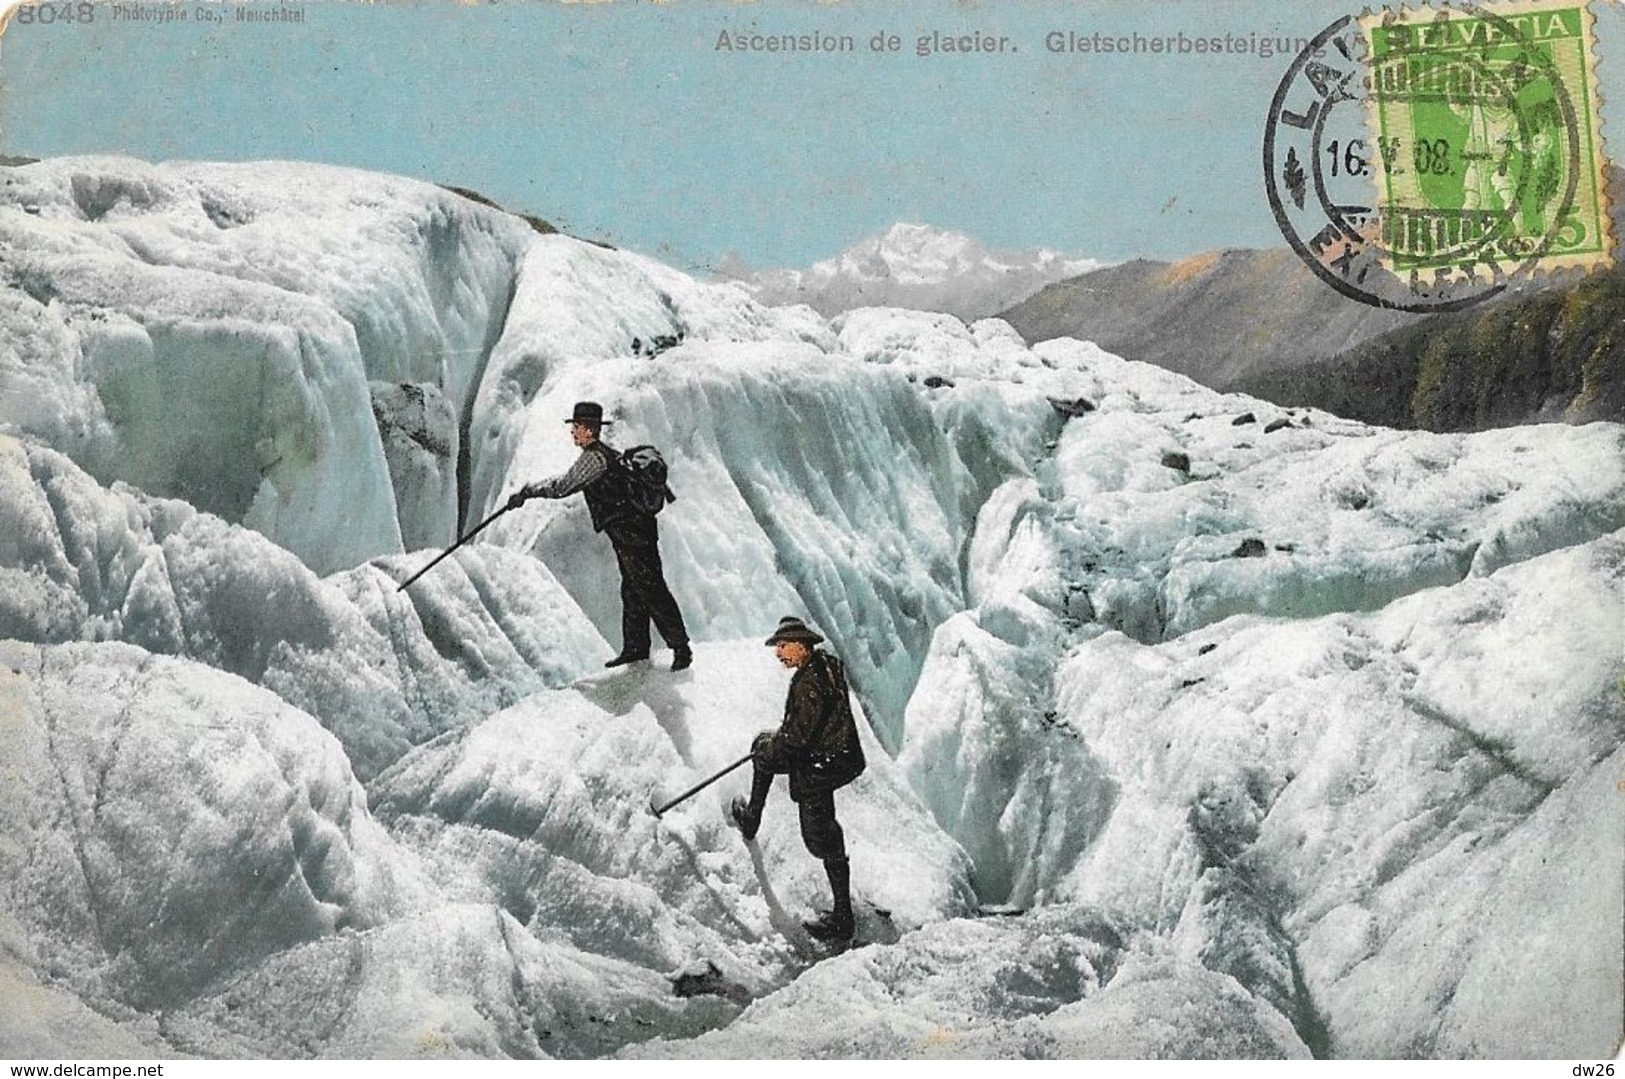 Alpinisme - Ascension Du Glacier - Gletscherbesteigung (Suisse) - Mountaineering, Alpinism